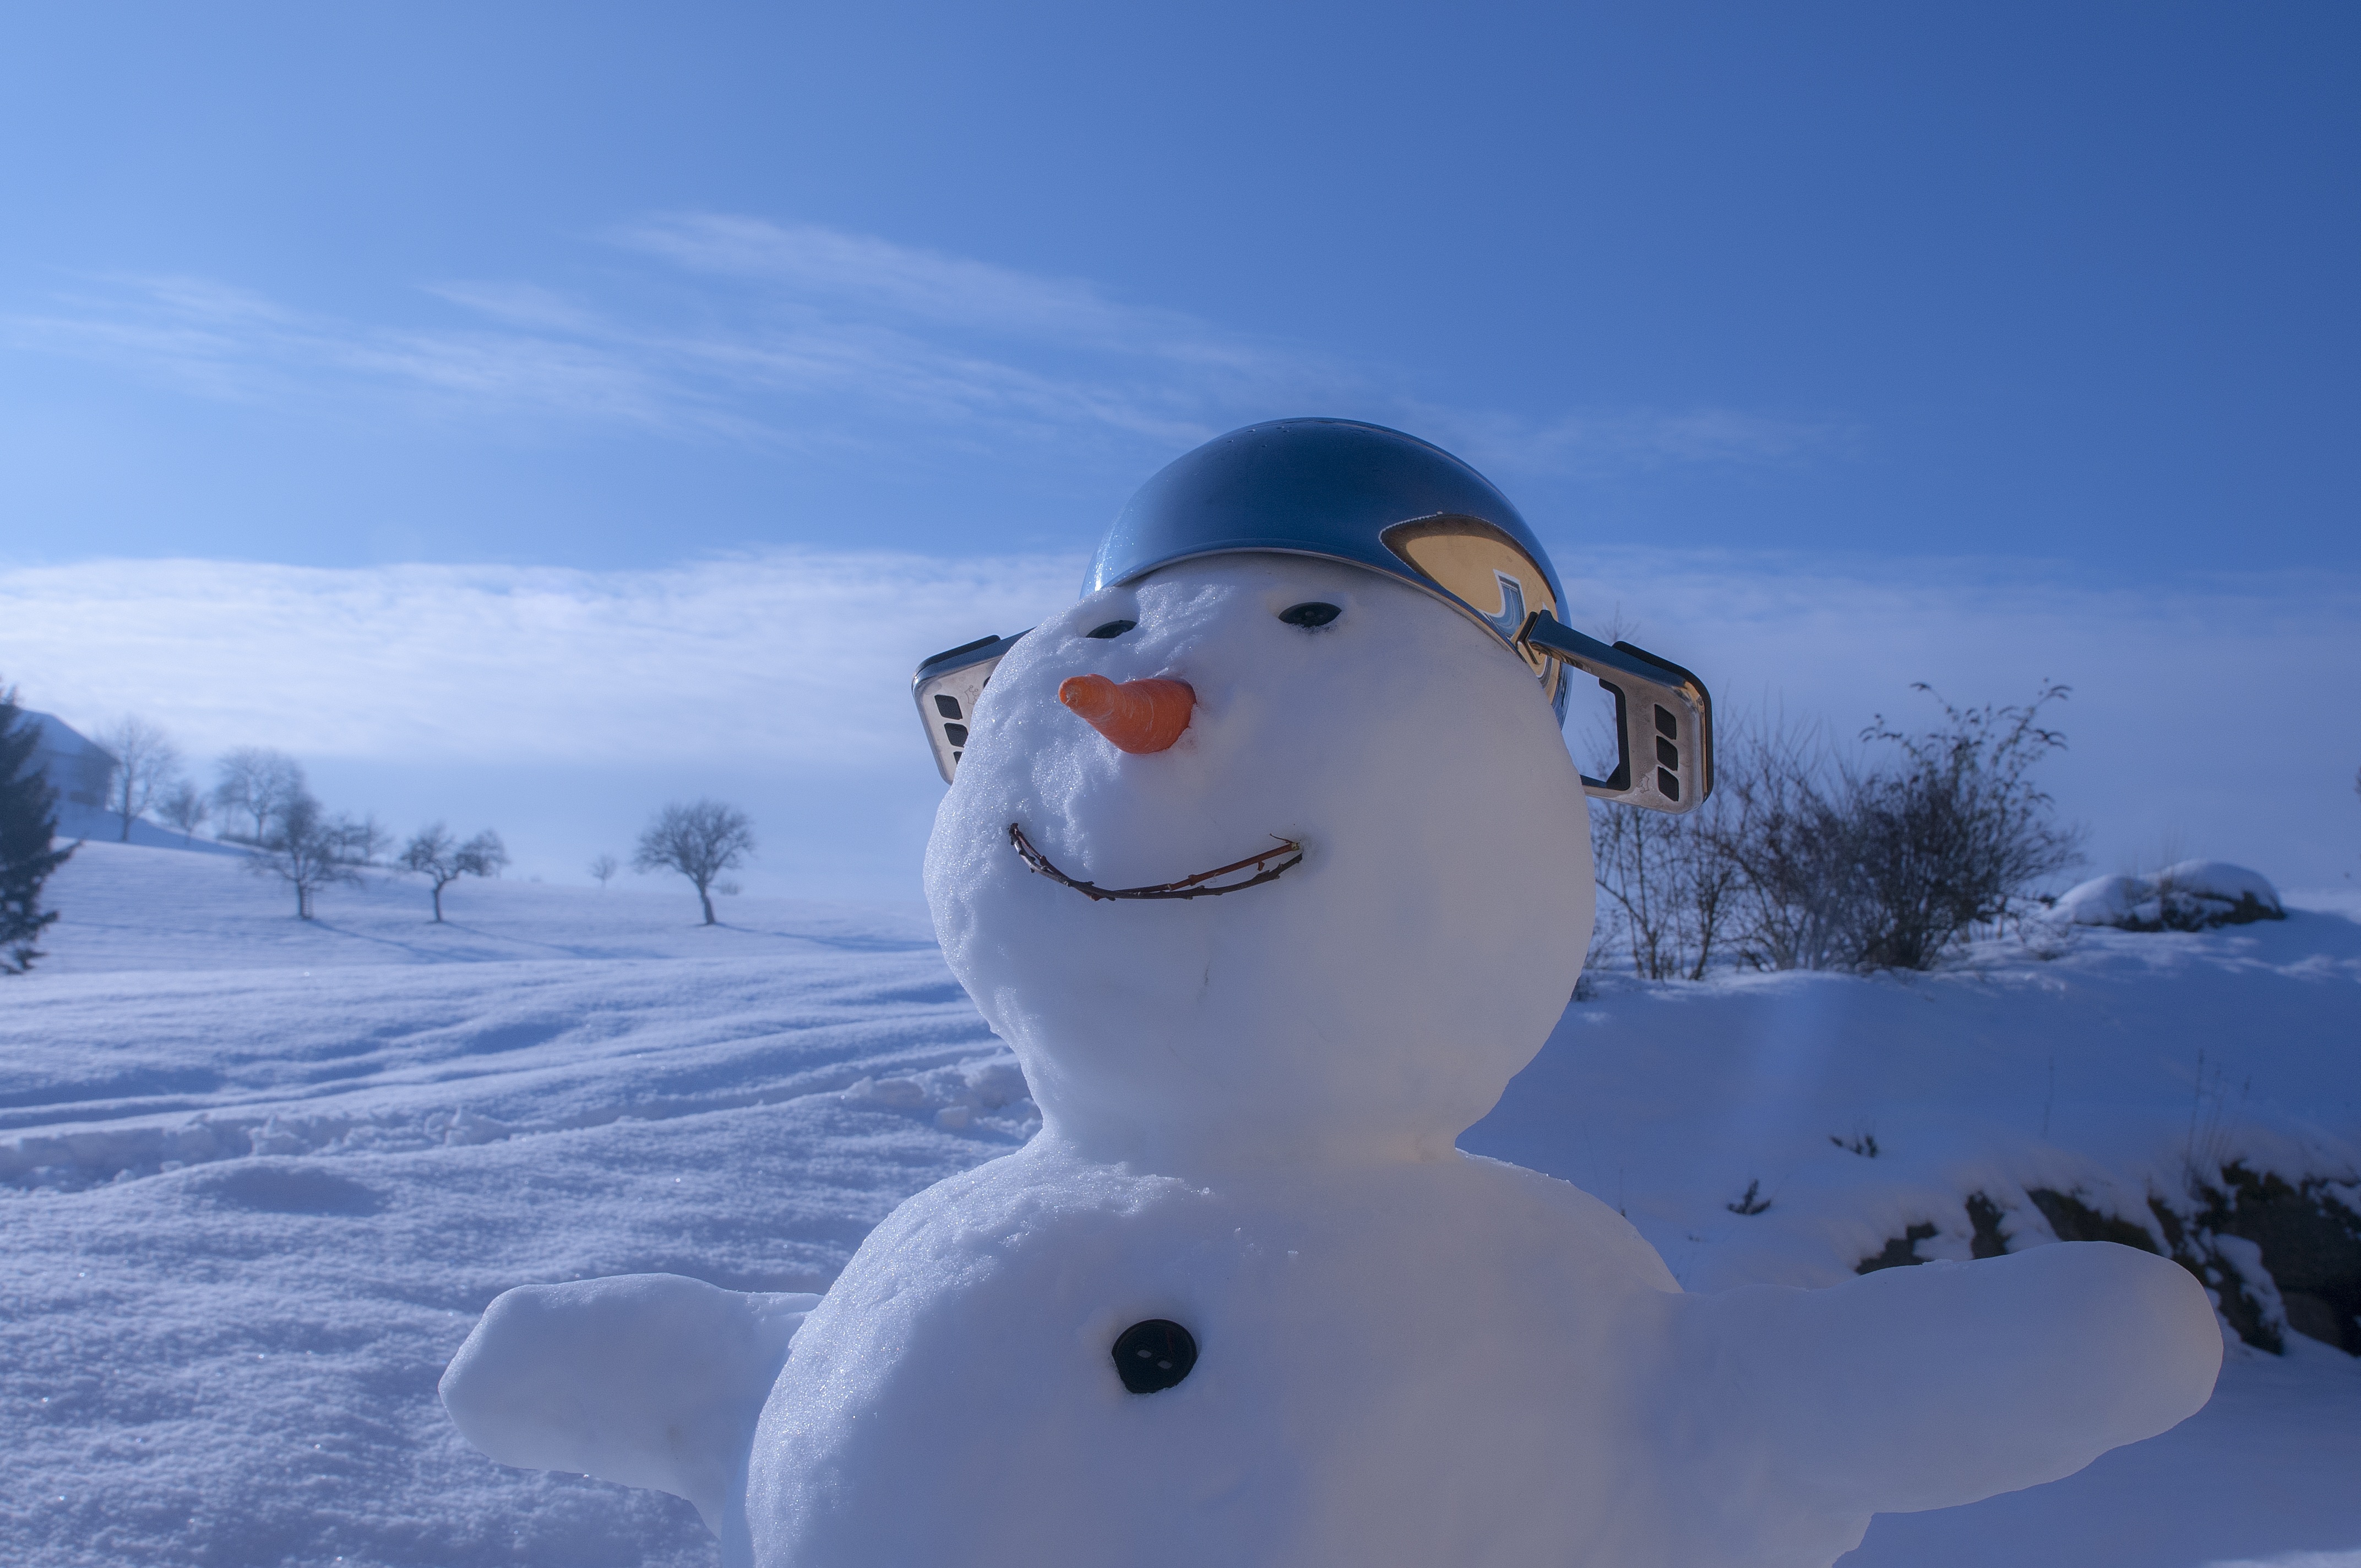 Скачать картинку Зима, Снег, Снеговик, Фотографии в телефон бесплатно.